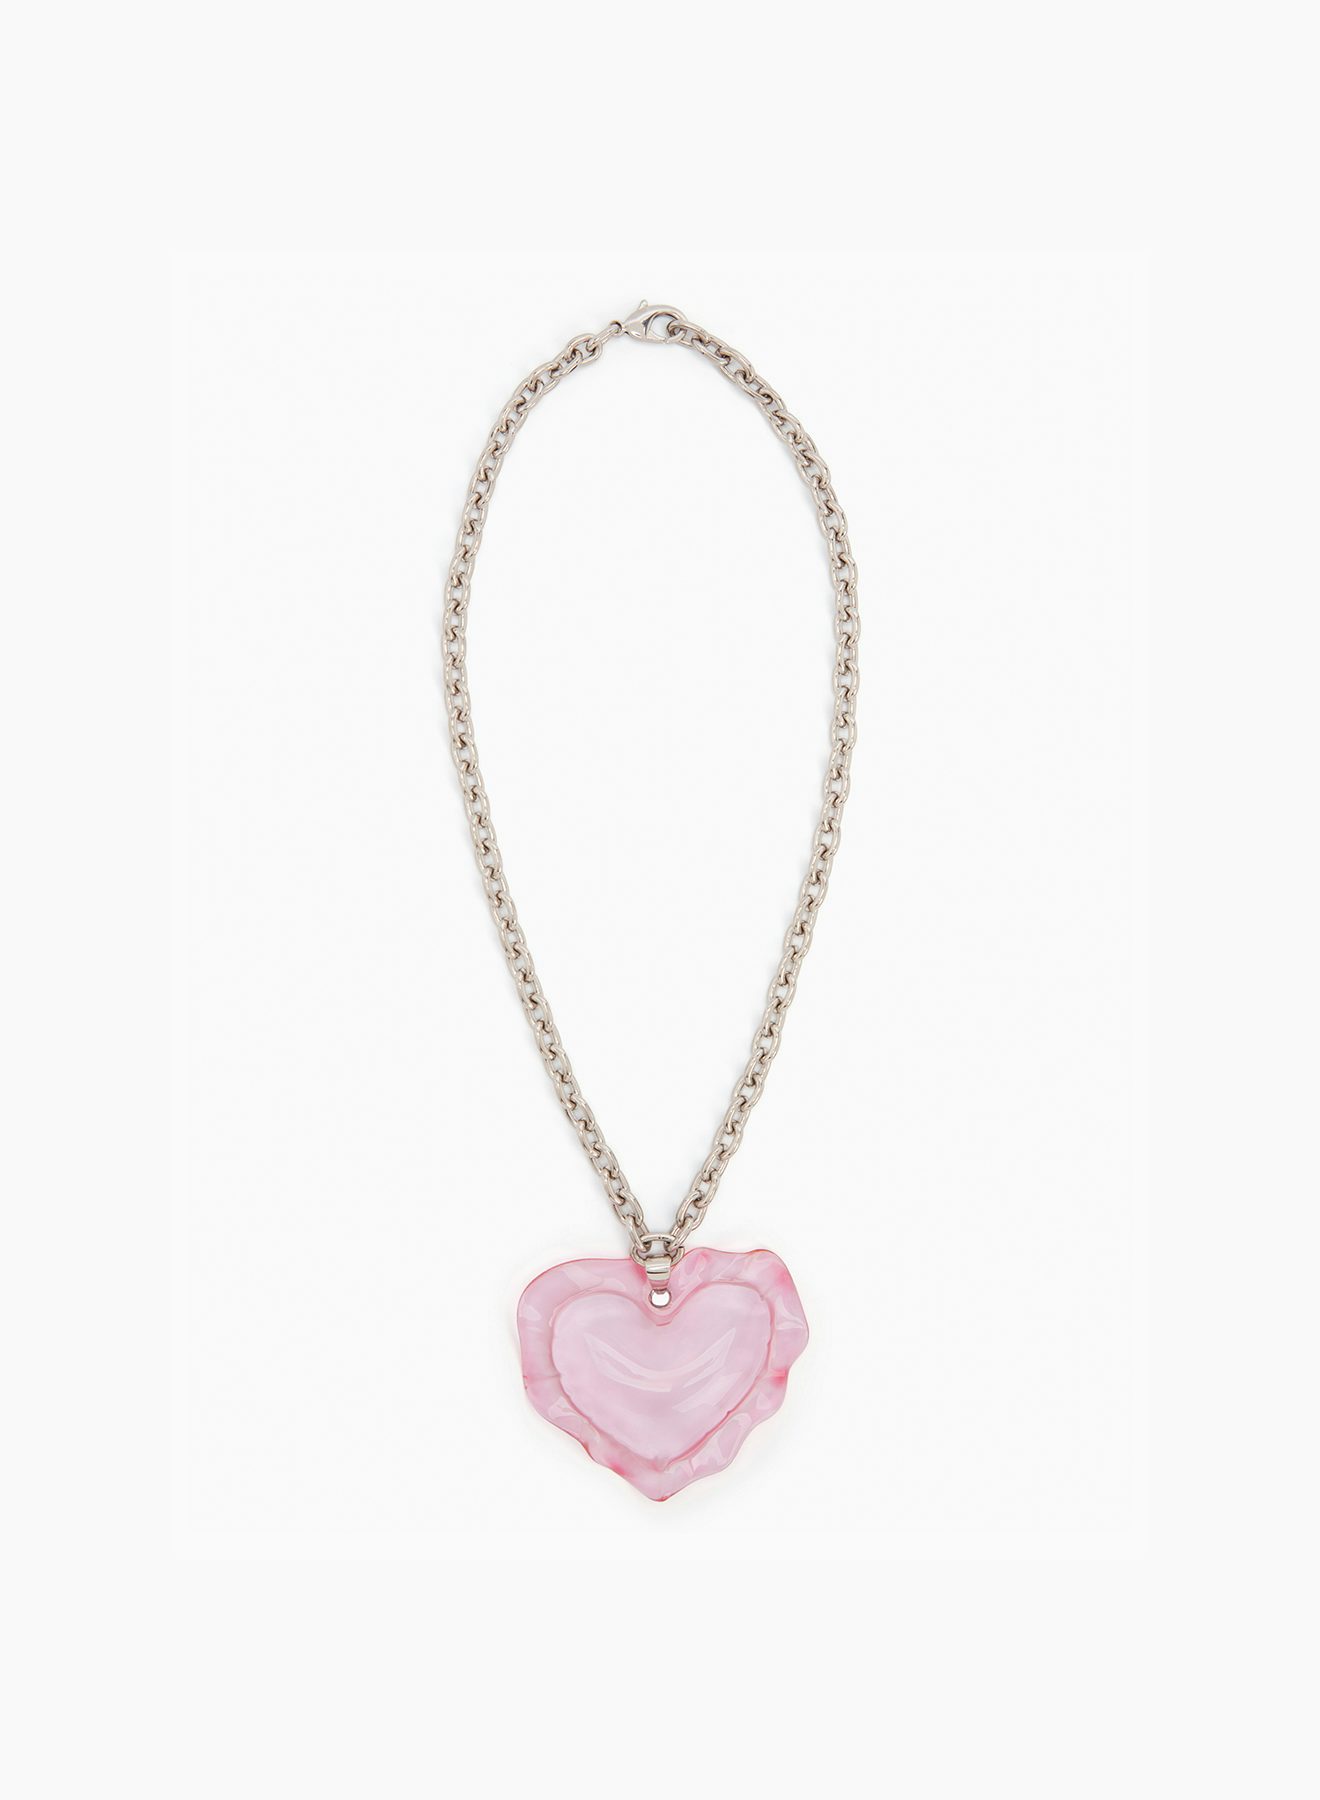 Cushion heart necklace in pink - Nina Ricci